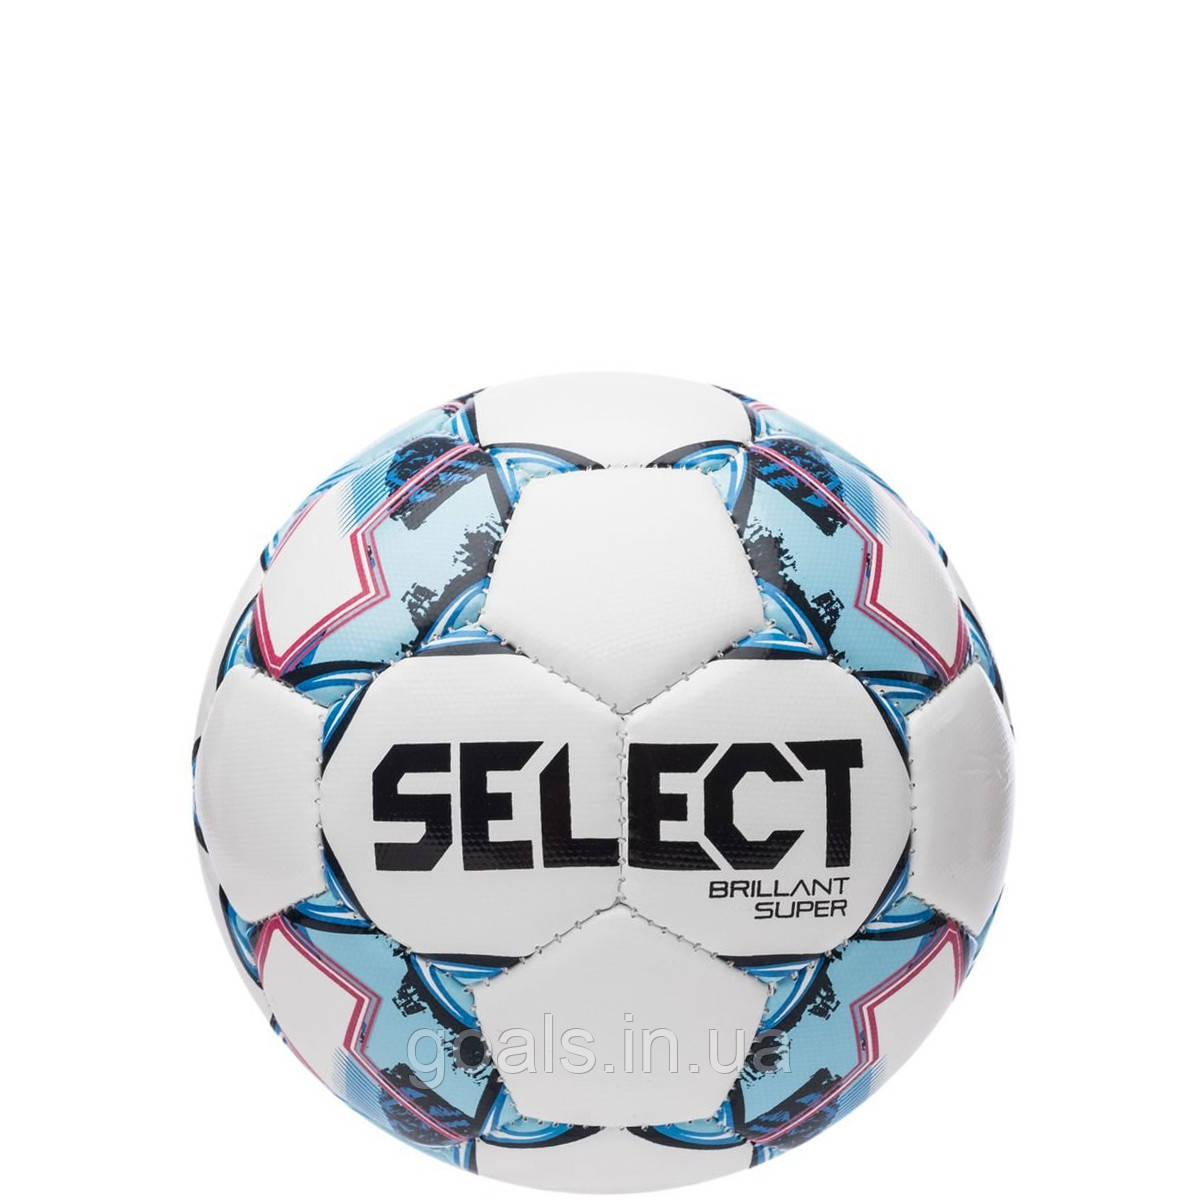 М'яч сувенірний SELECT Brillant Super mini (47 cm) (172), бел/червон